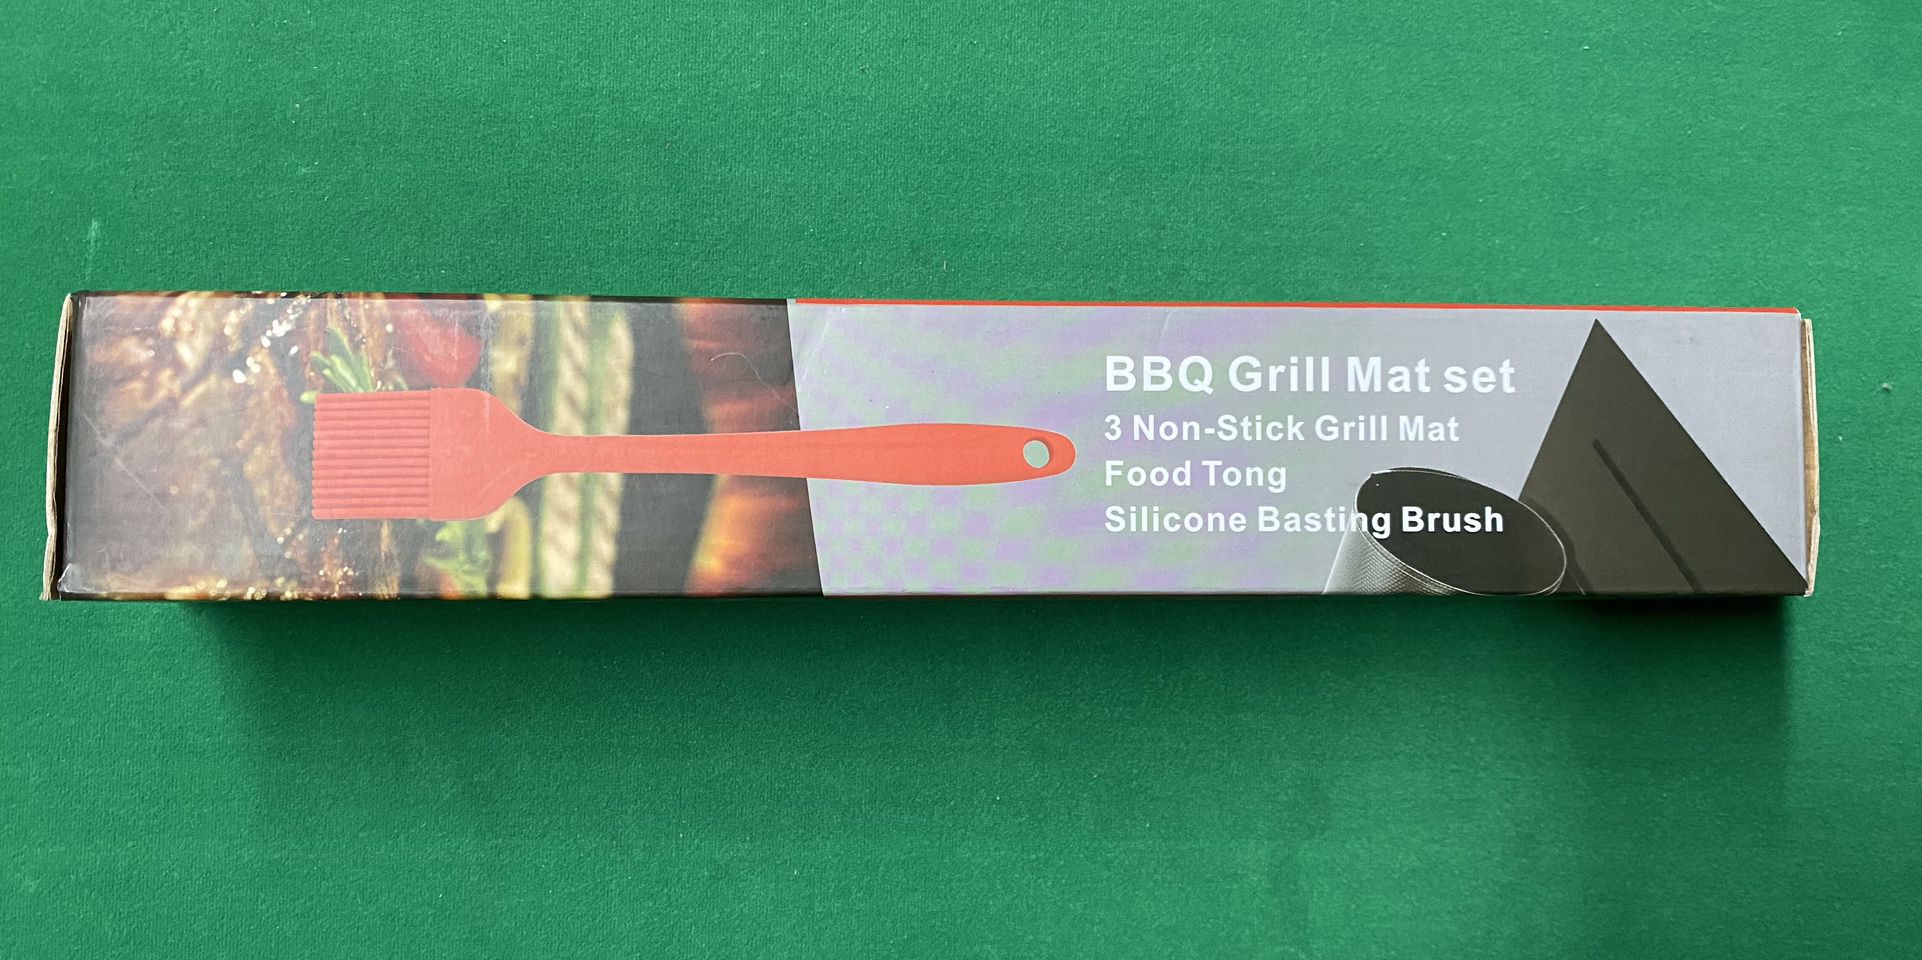 Bbq Grill Mat Set $8